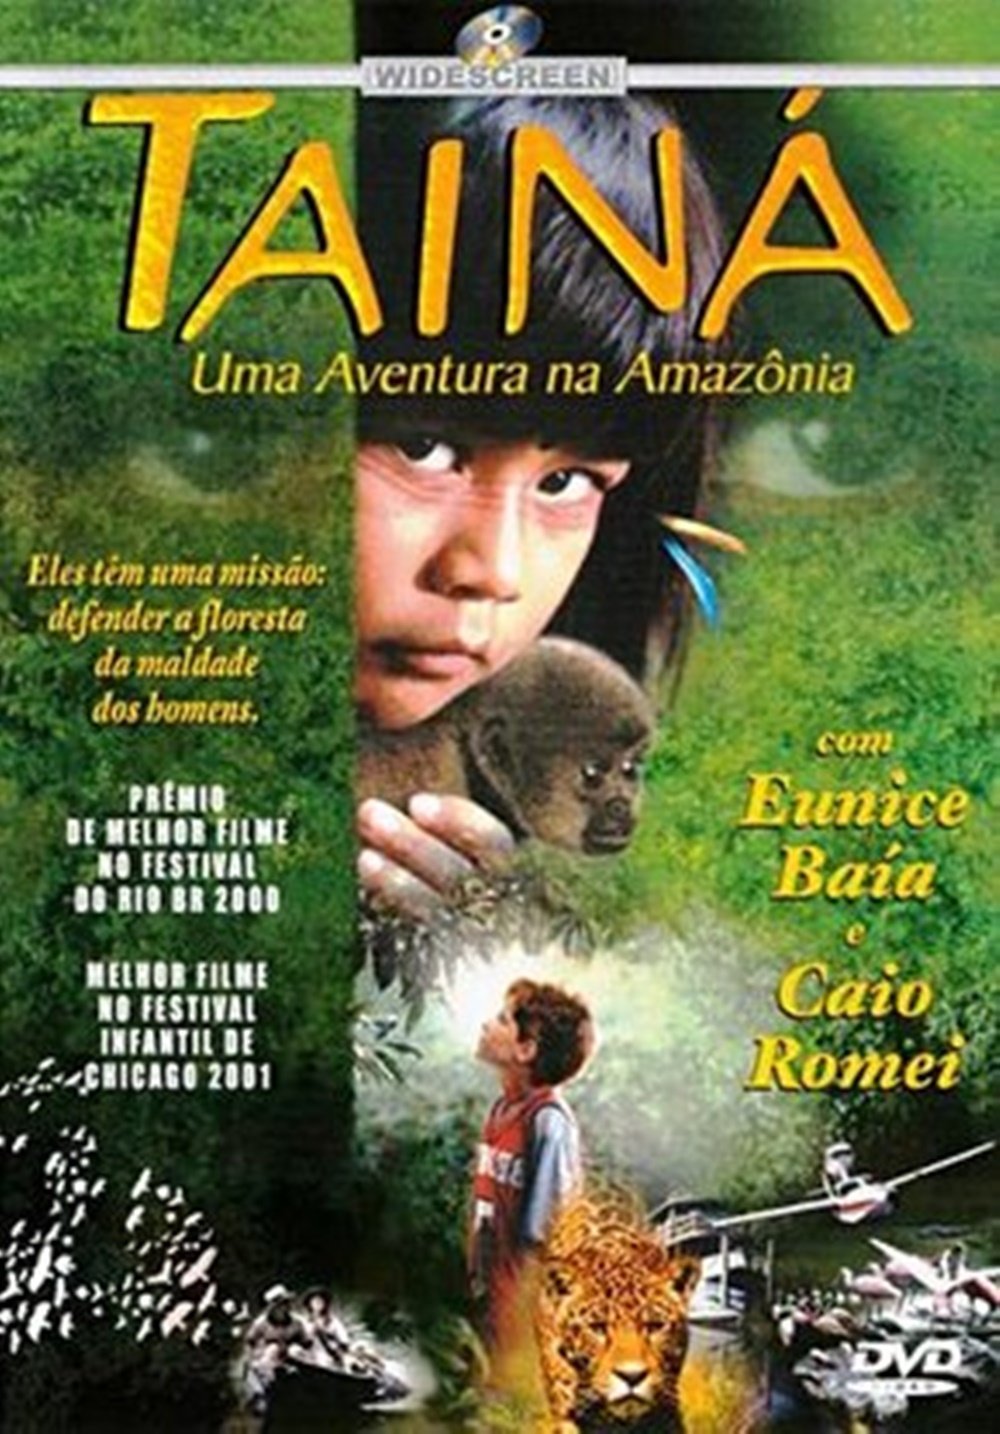 Cartaz do filme Tainá, ano 2000.